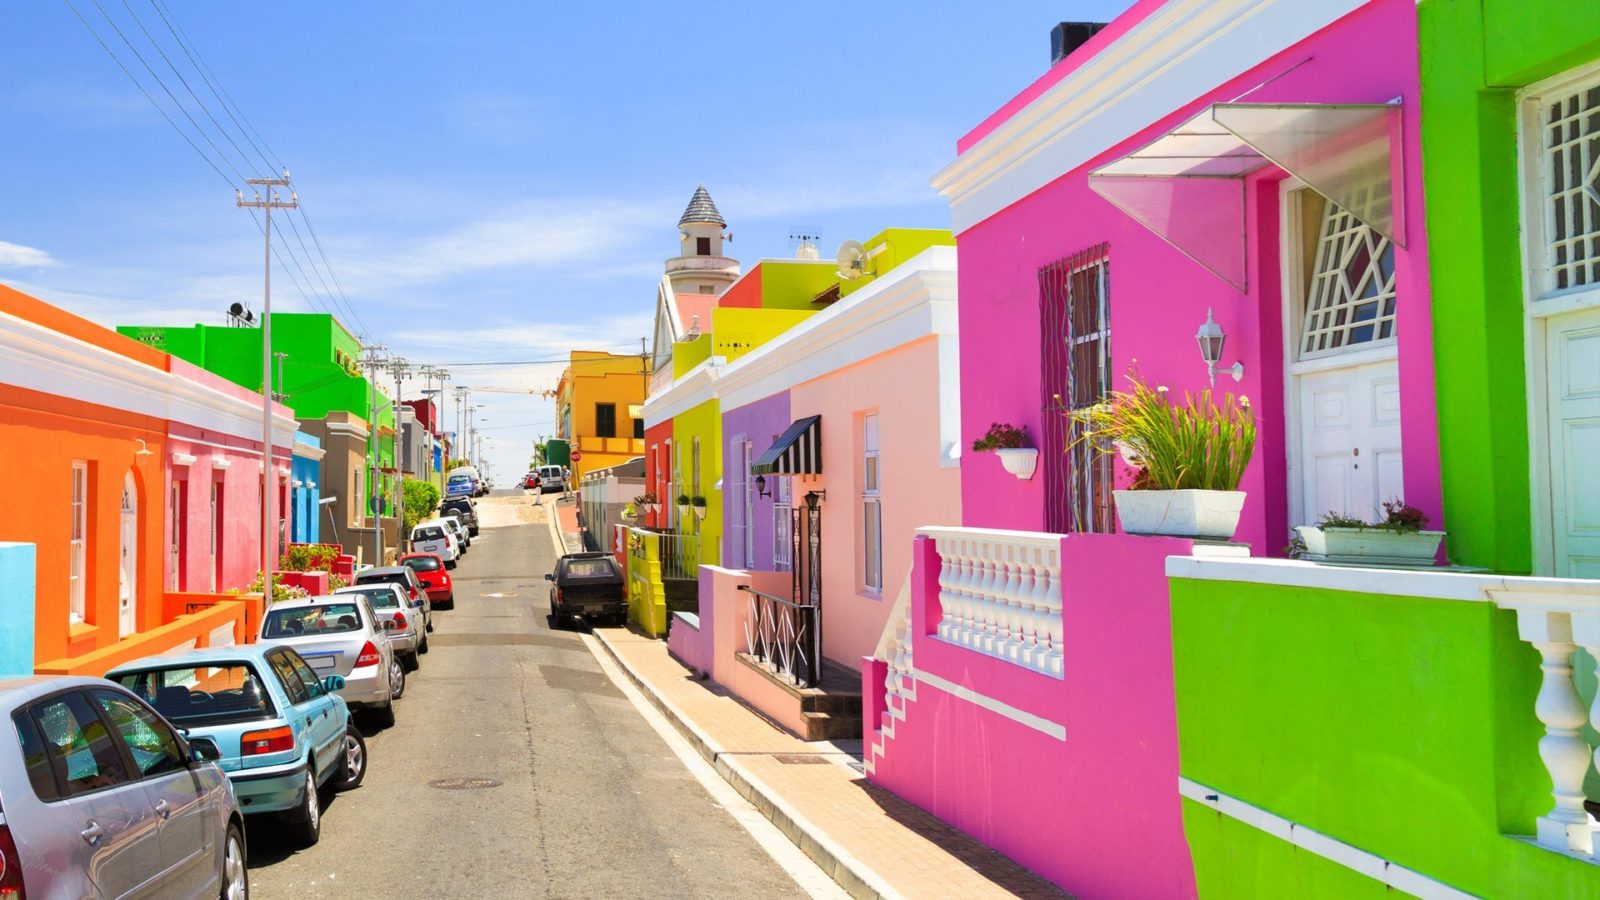 Khu phố Bo Kaap với những căn nhà rực rỡ sắc màu